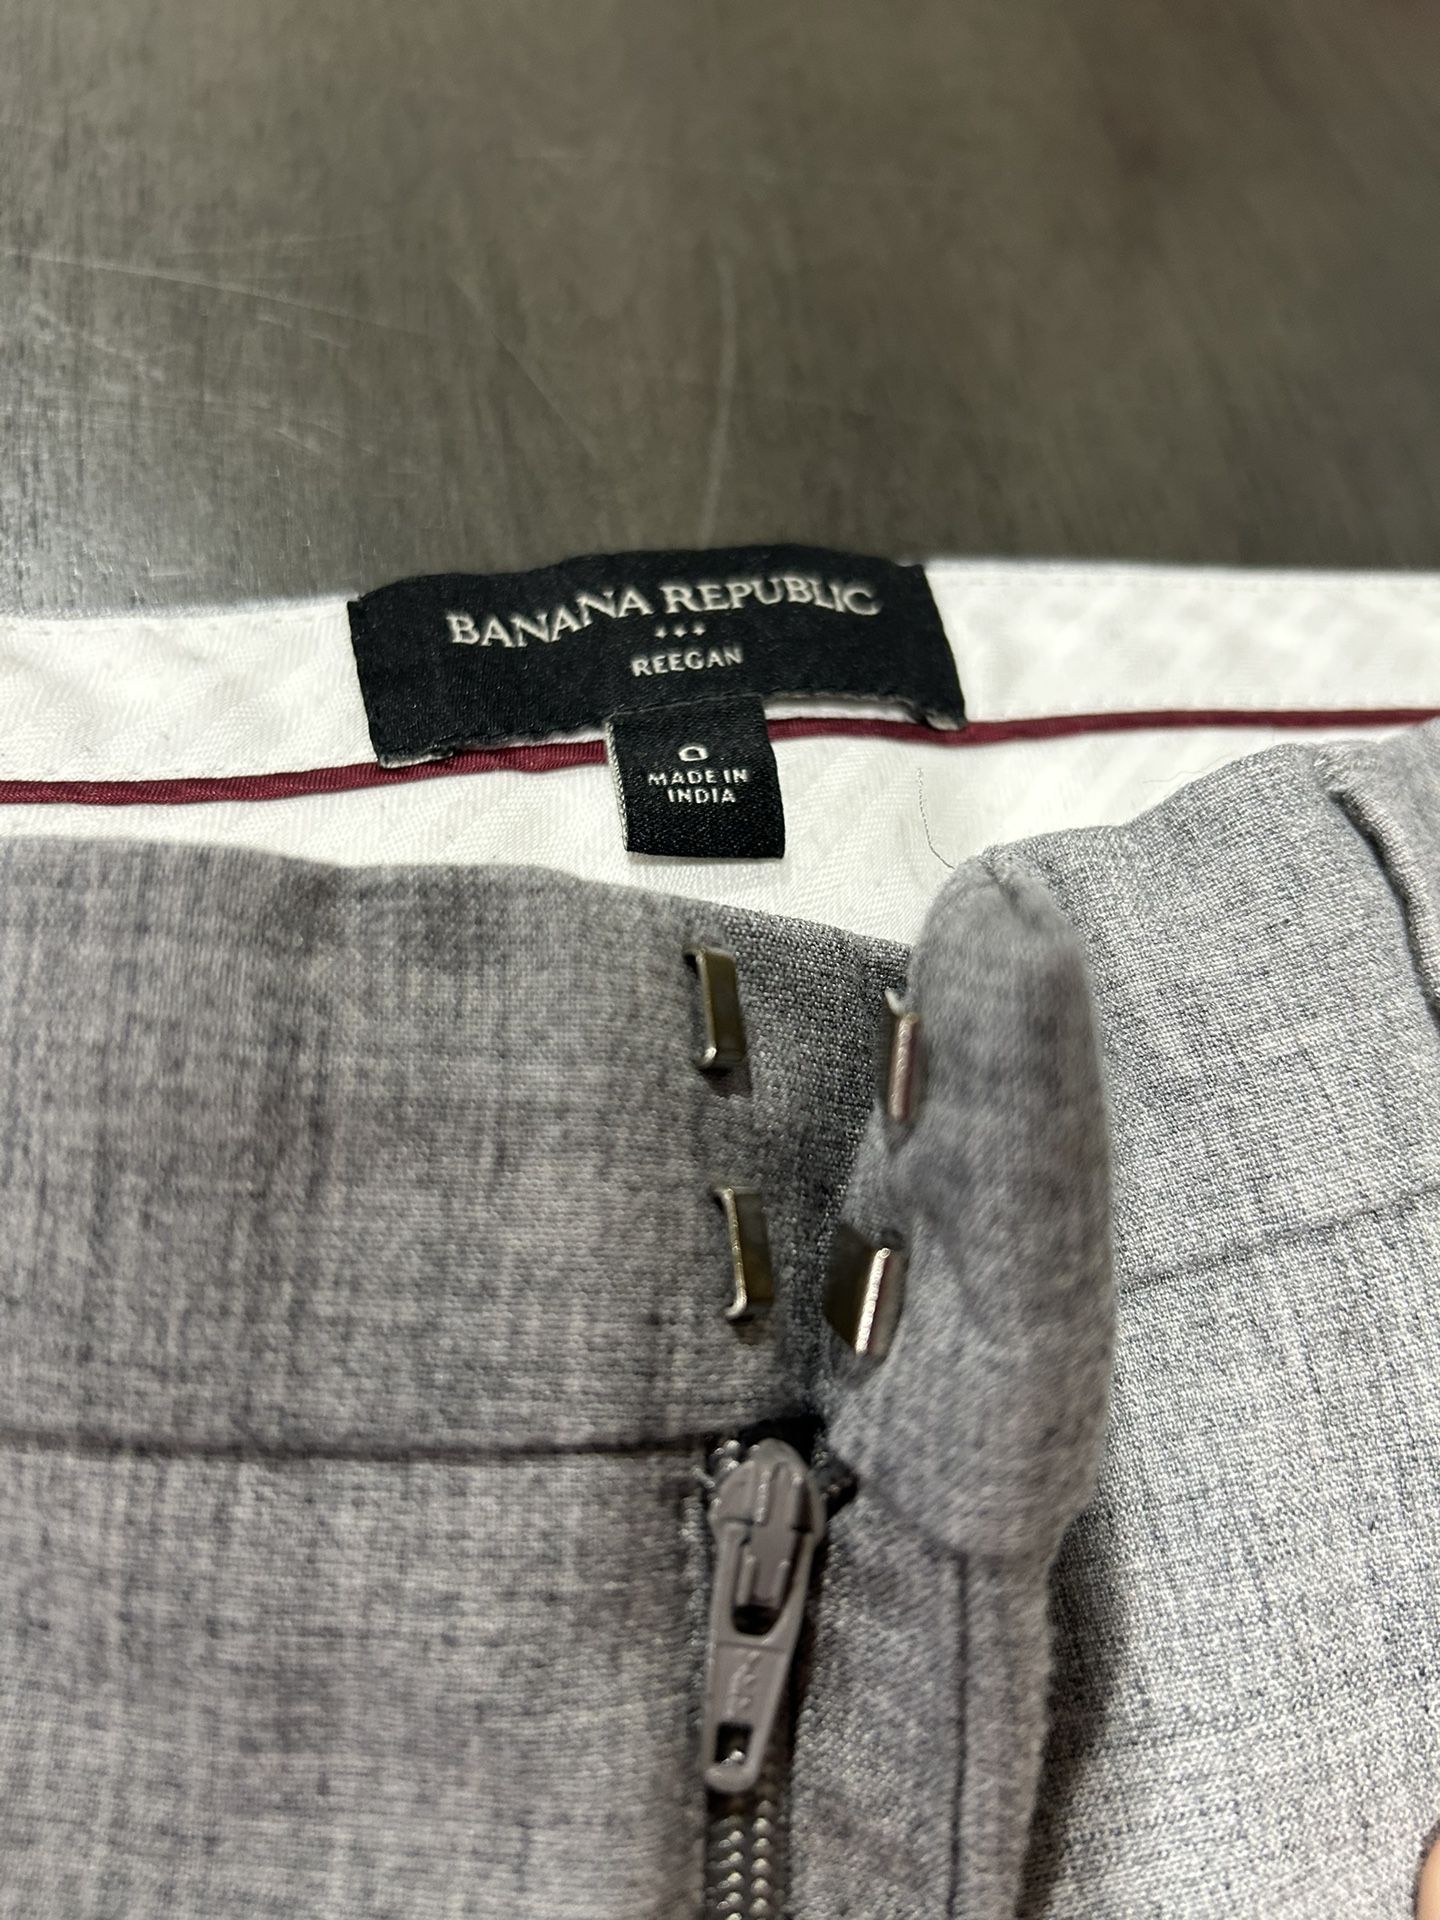 Banana Republic, Reegan, women’s pants, work/dressy pants, gray, size 0